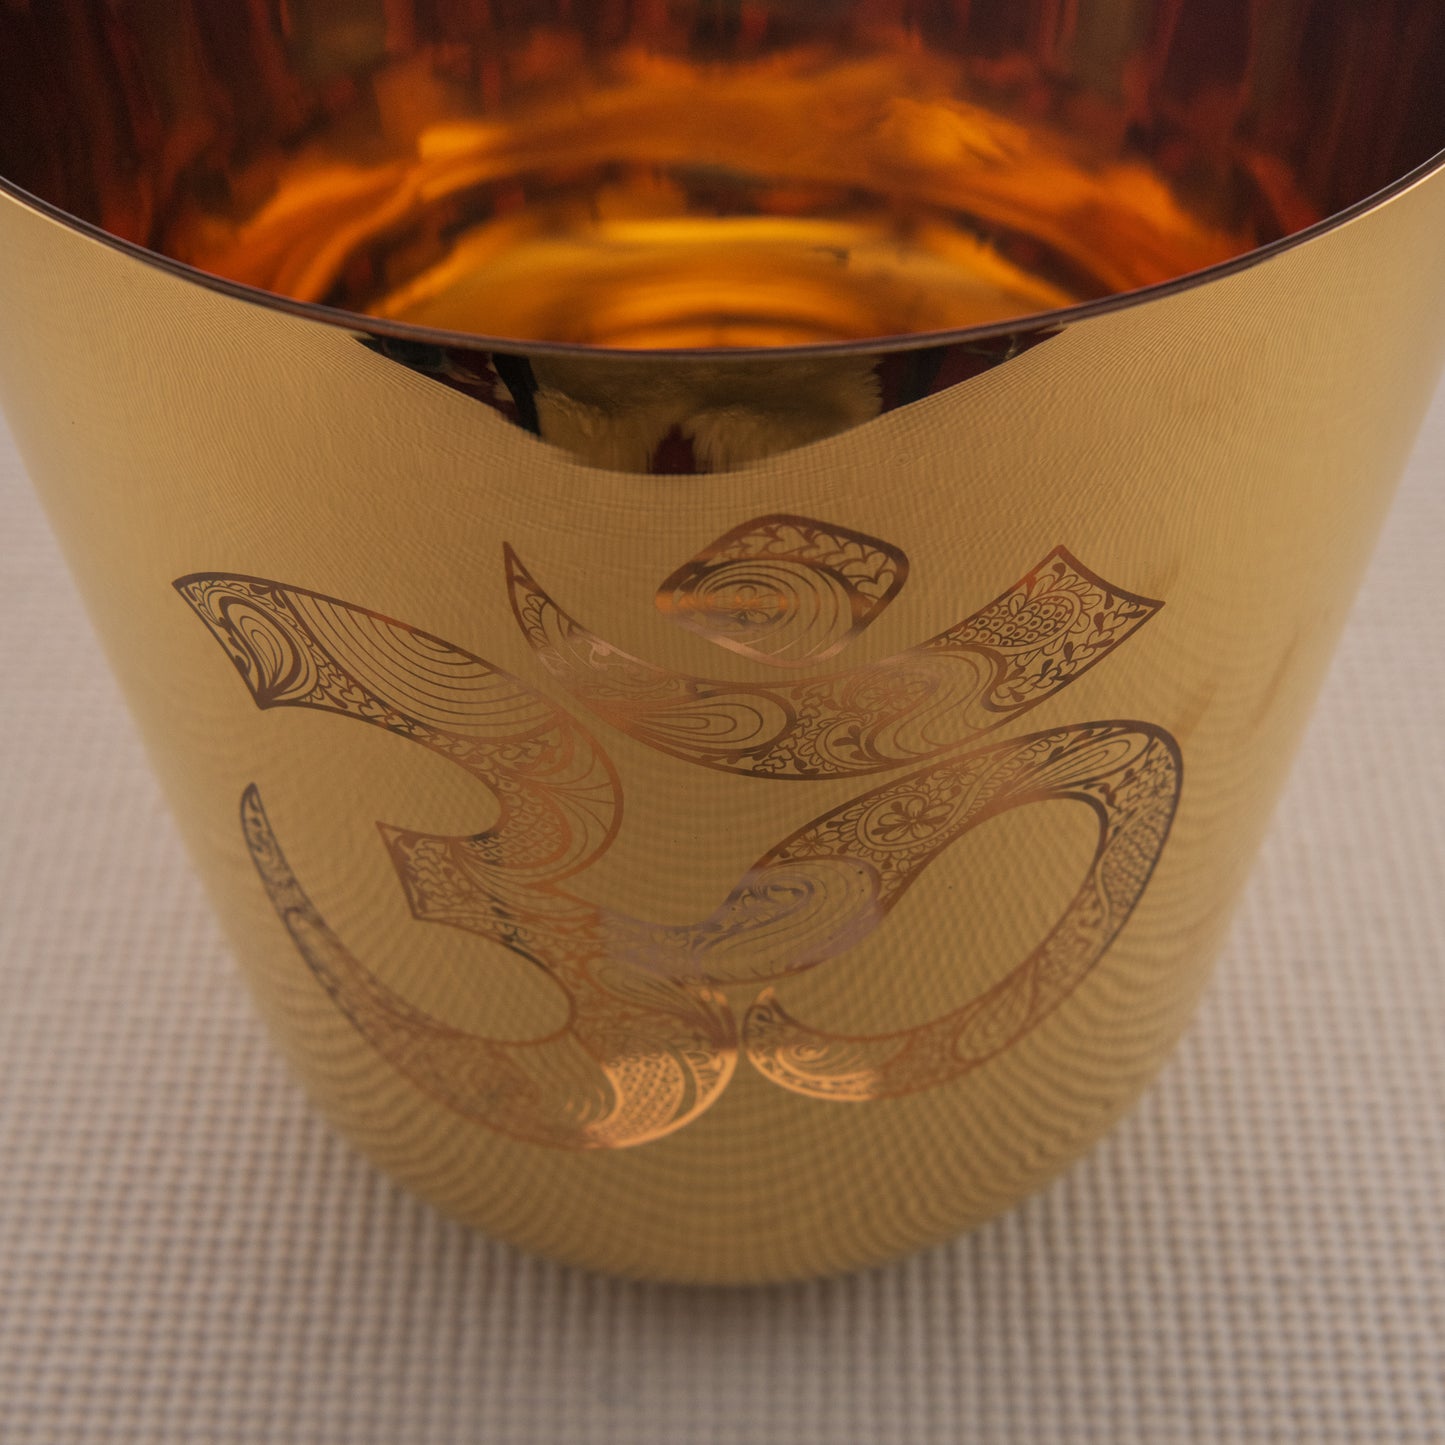 9" C-11 24k Gold Crystal Singing Bowl with Sacred Om Symbol